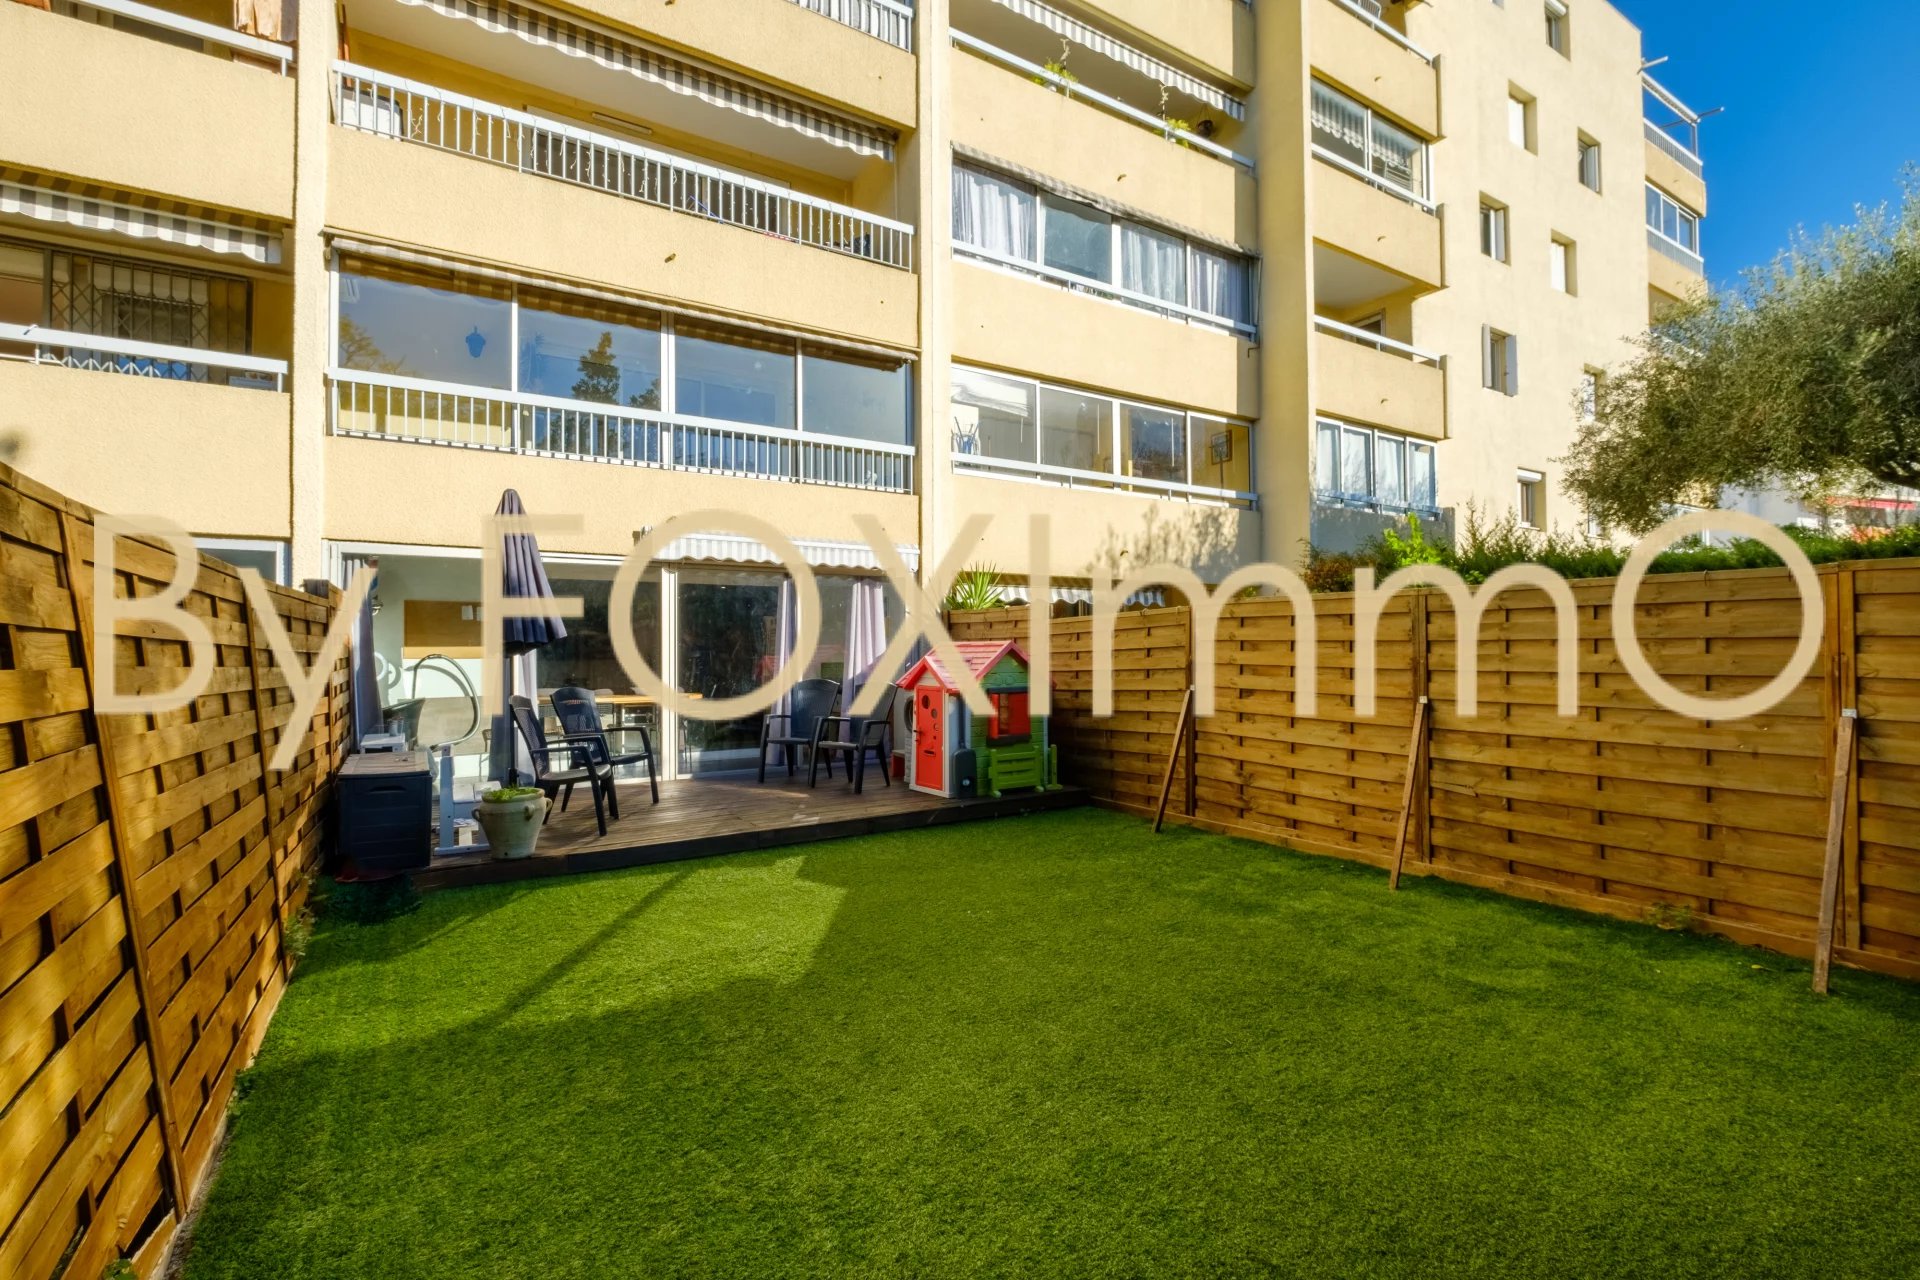 A vendre sur la Côte d'Azur, appartement 3 pièces de 71m² en rez de jardin exposé Ouest